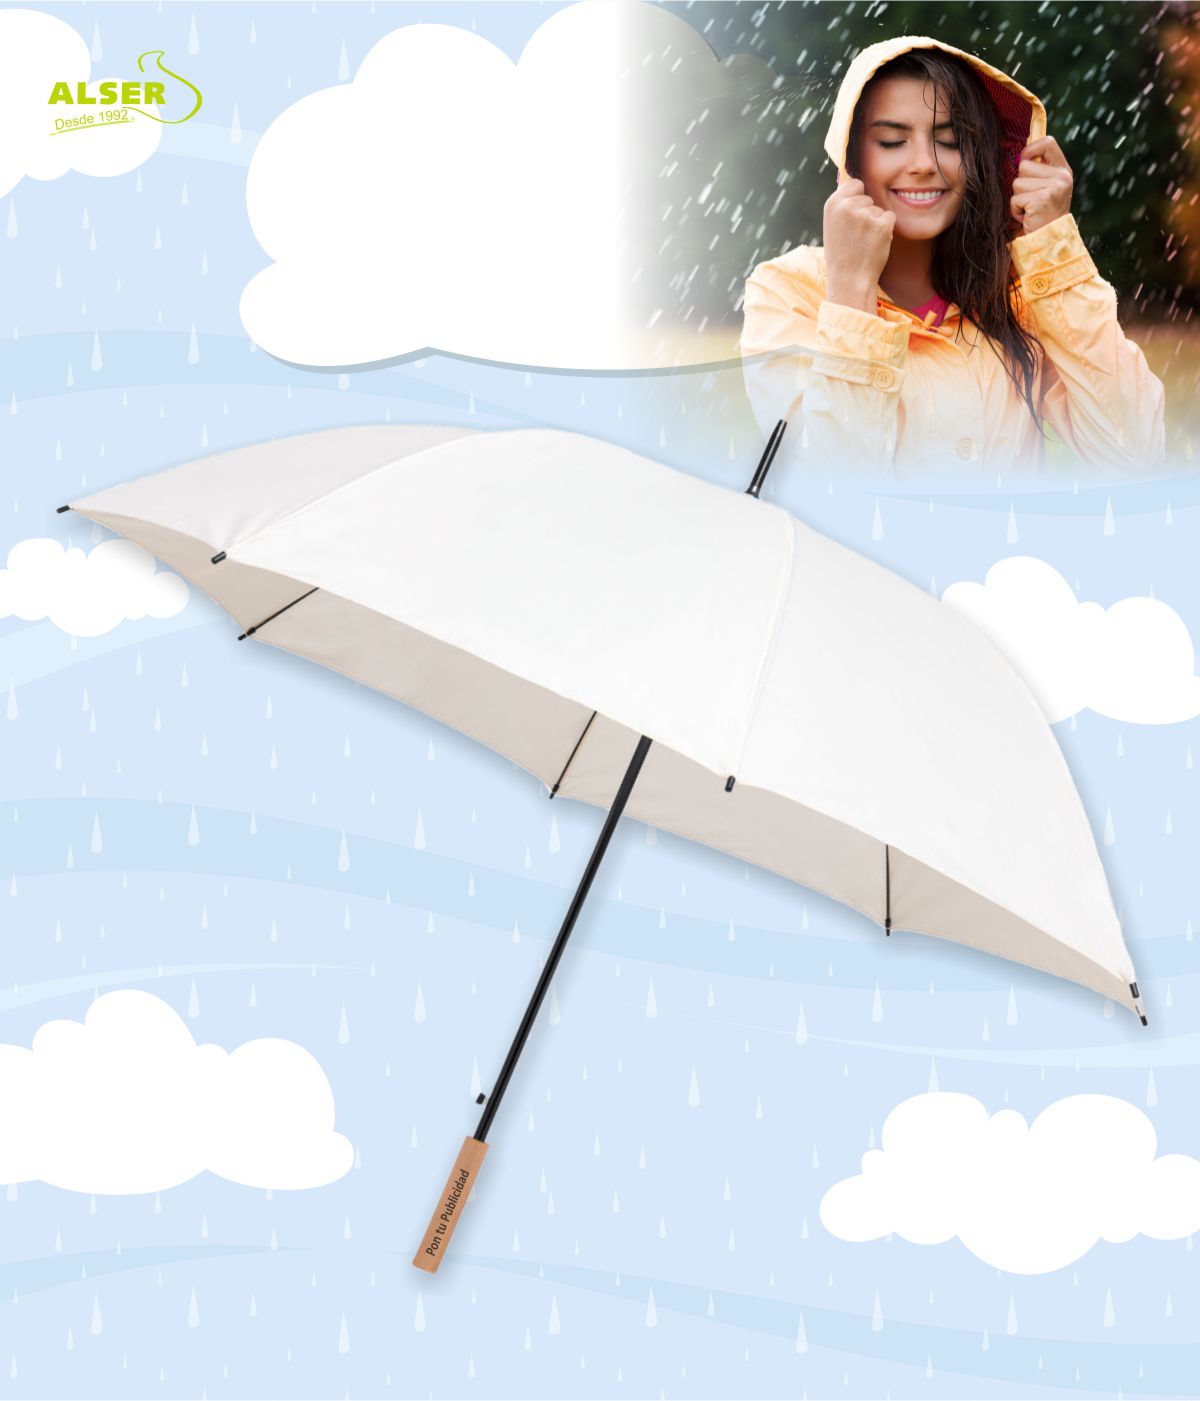 Paraguas XL de 130 cm. Antiviento y Personalizado ☔️